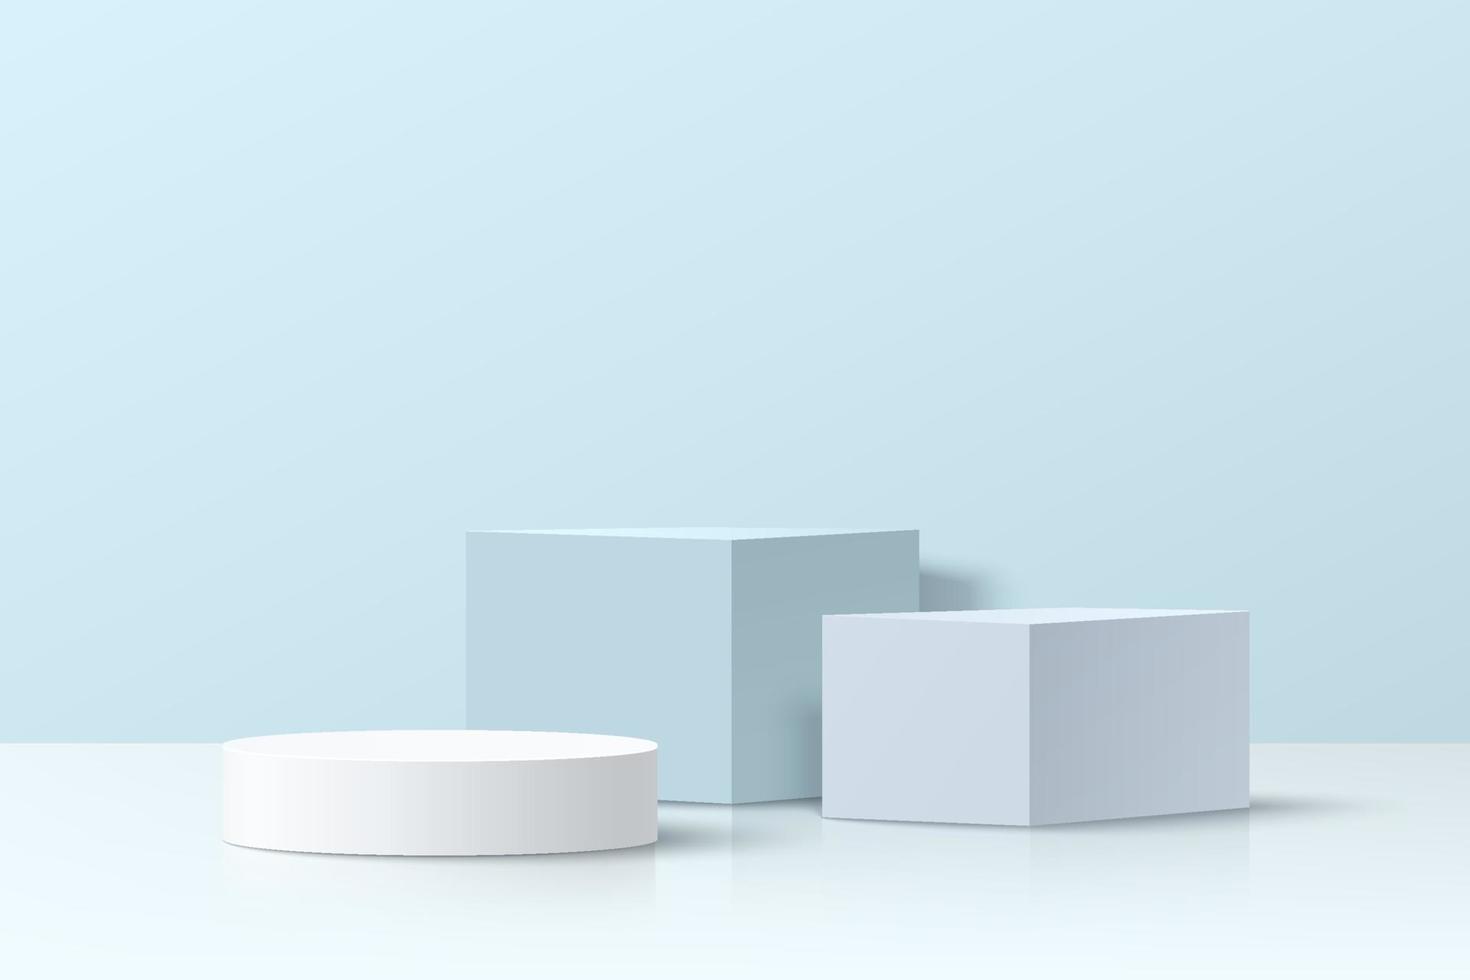 podium de piédestal de cube et de cylindre 3d blanc et bleu réaliste situé dans une pièce abstraite avec ombre de fenêtre. scène minimale pour la vitrine des produits, l'affichage de la promotion. conception de groupe de formes géométriques vectorielles vecteur